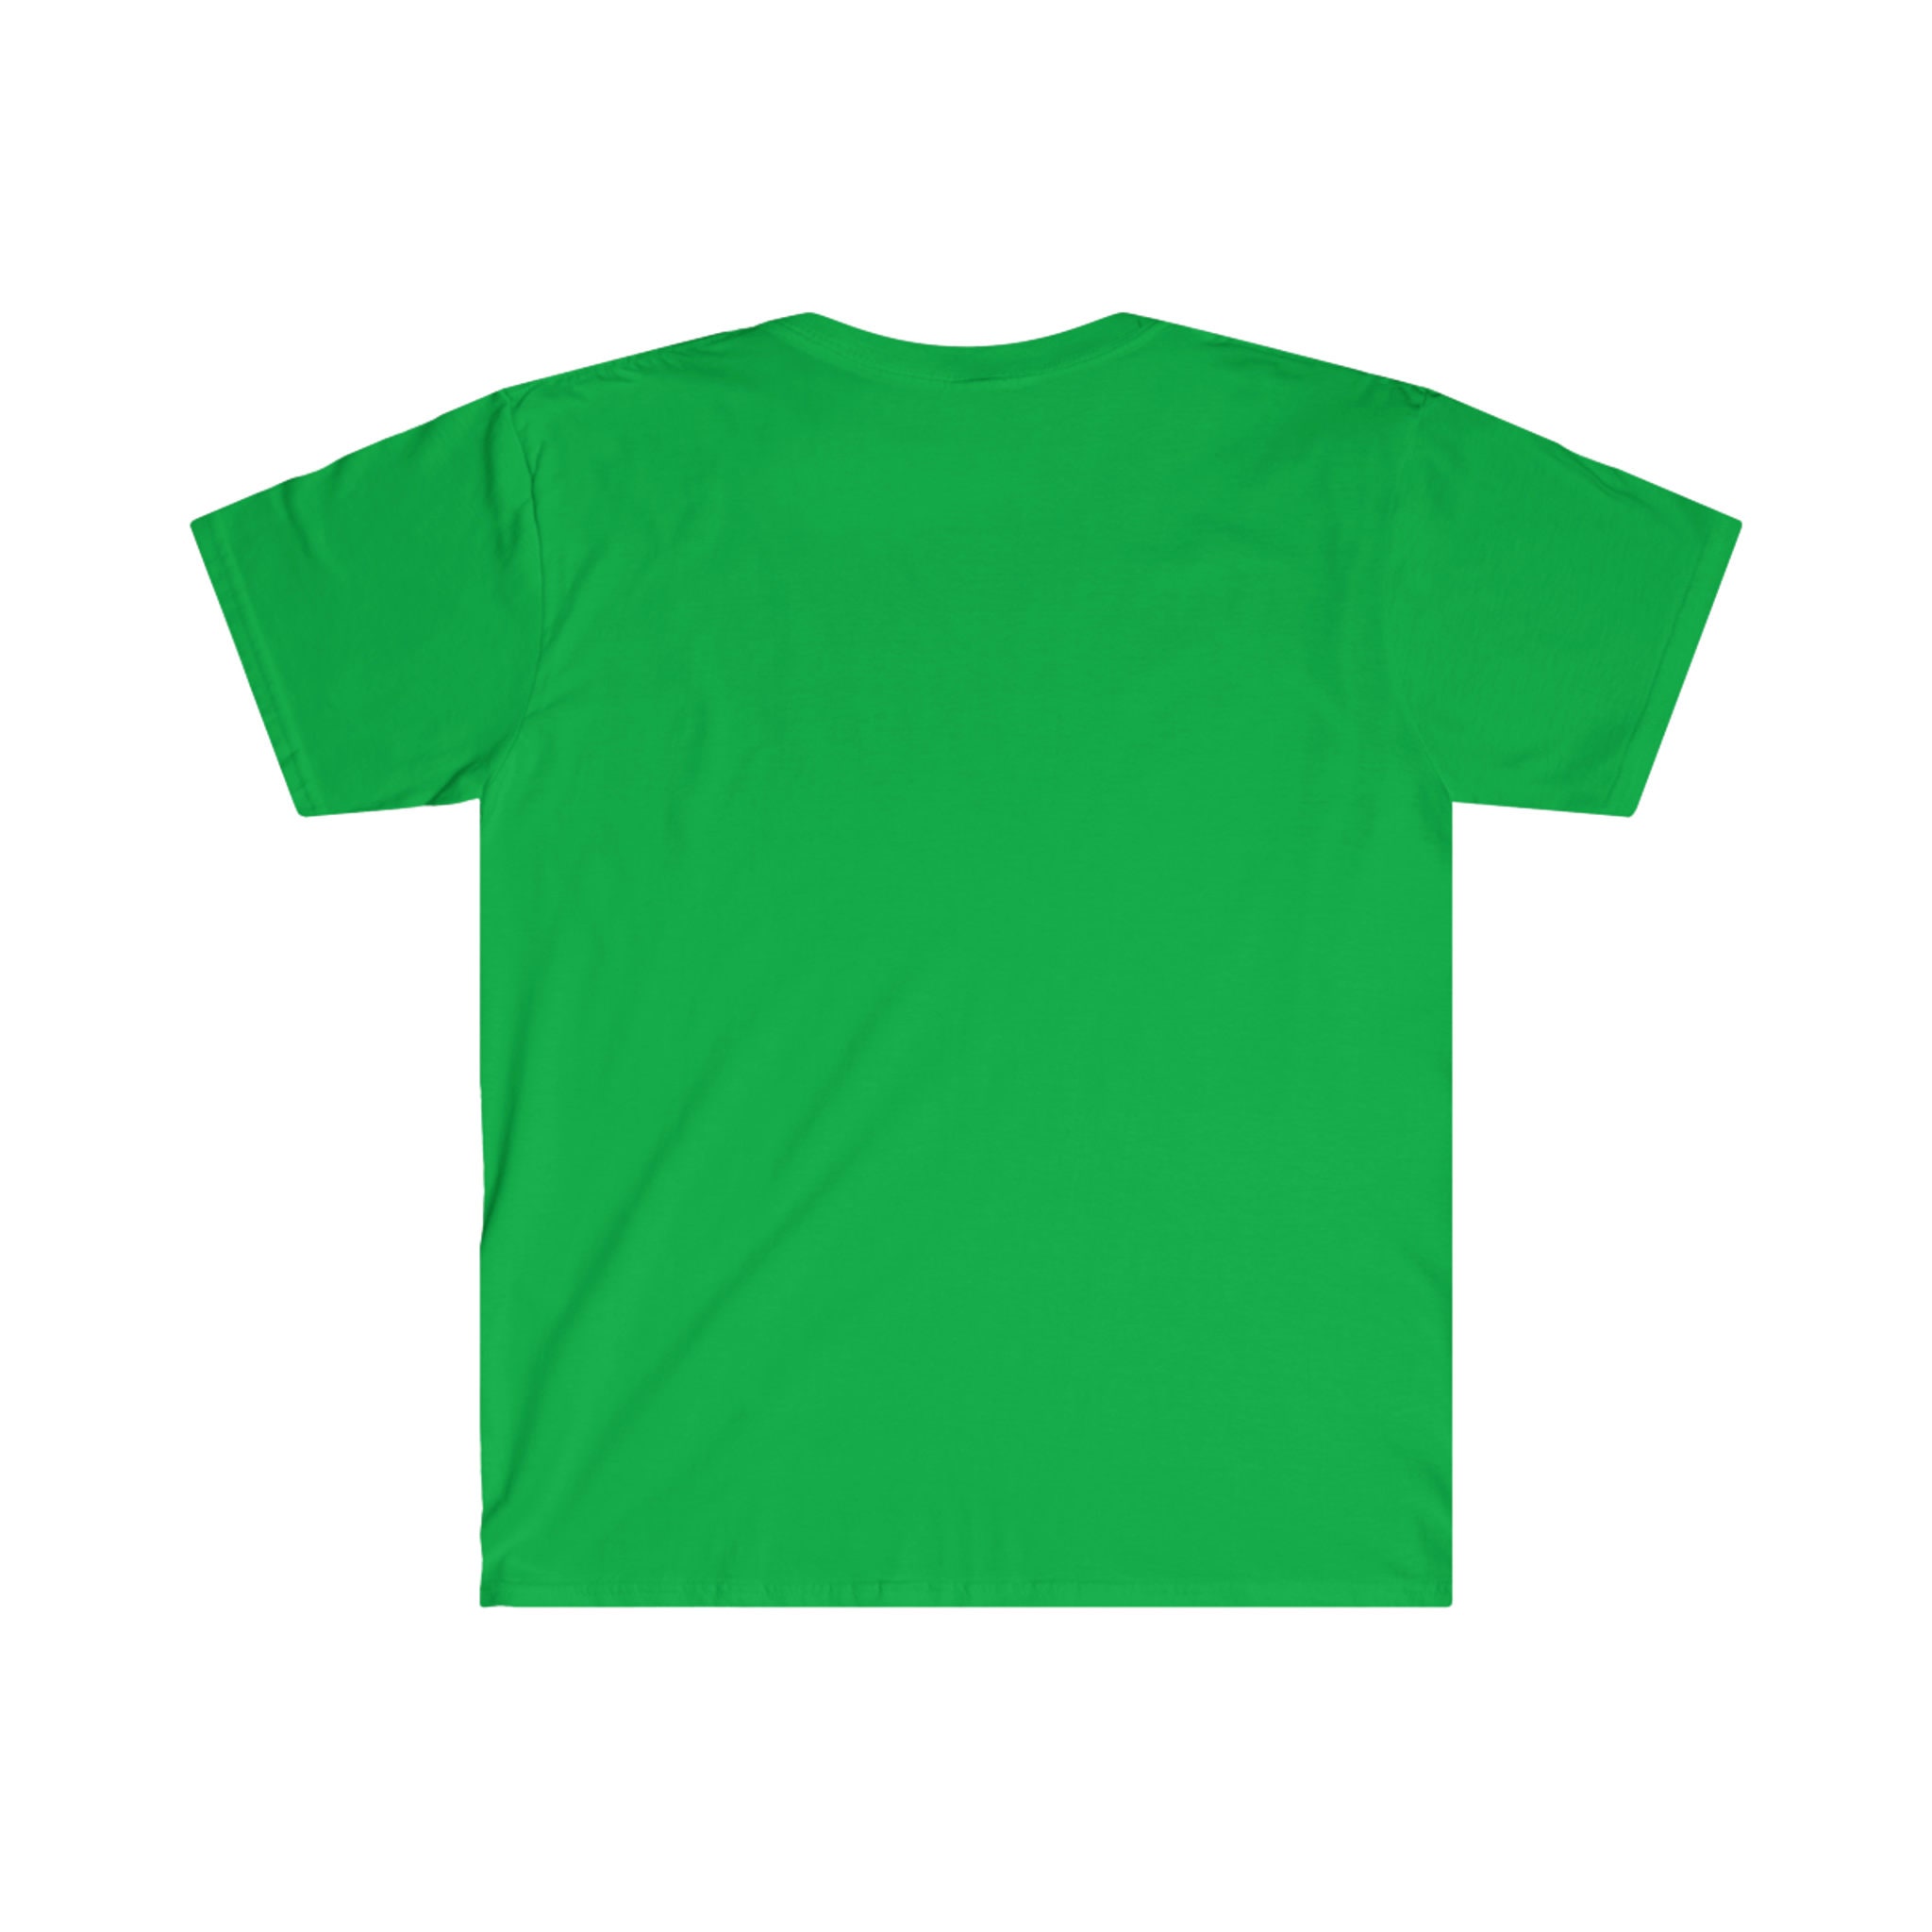 Vegeta Middle Finger Unisex Softstyle T-shirt - Etsy